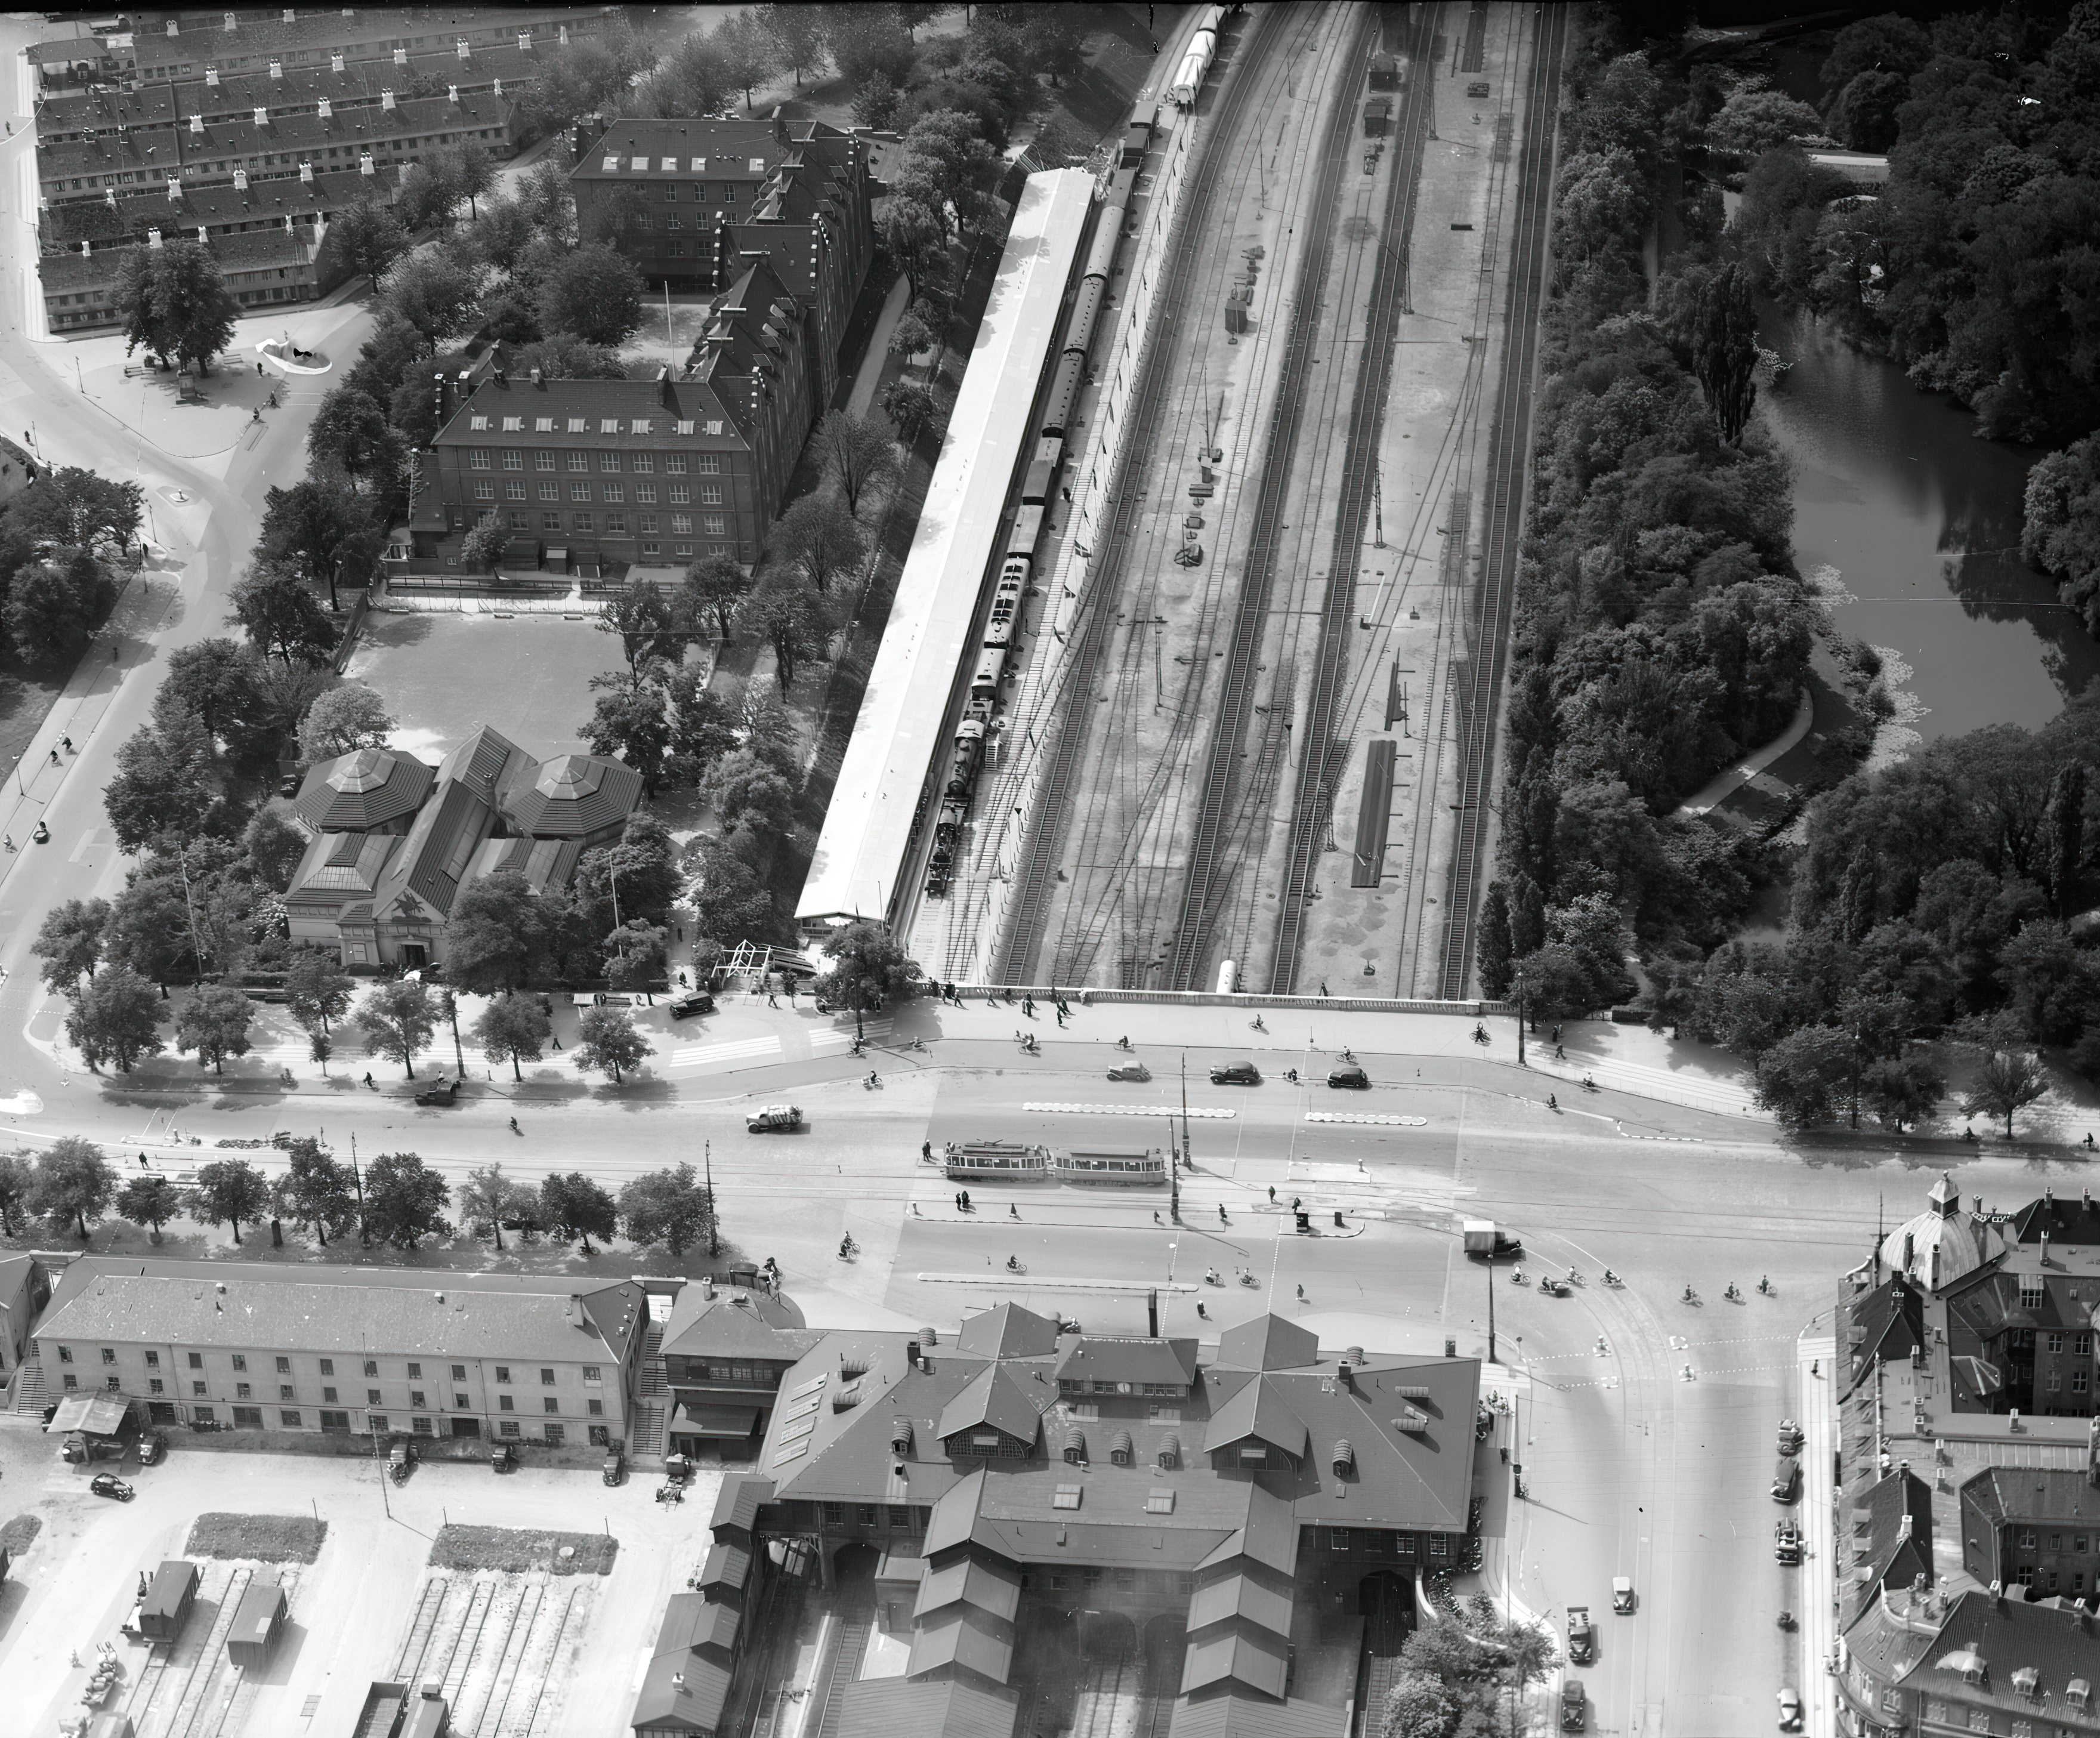 Billede af Østerport Station.